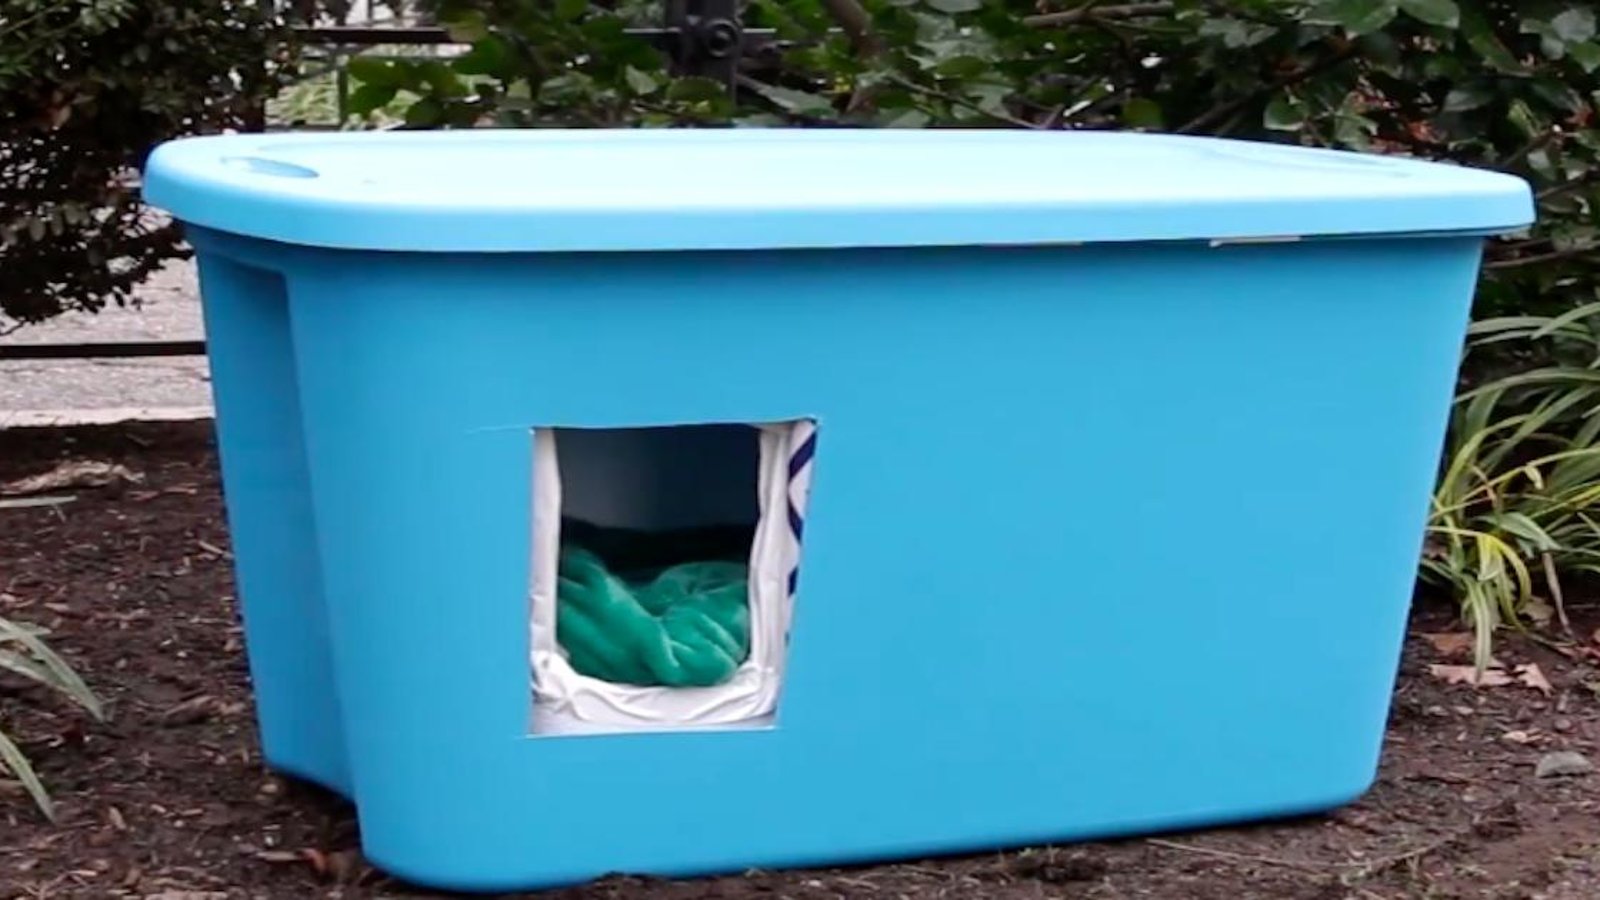 Récupérez un bac en plastique pour fabriquer un abri pour protéger les chats errants des températures froides